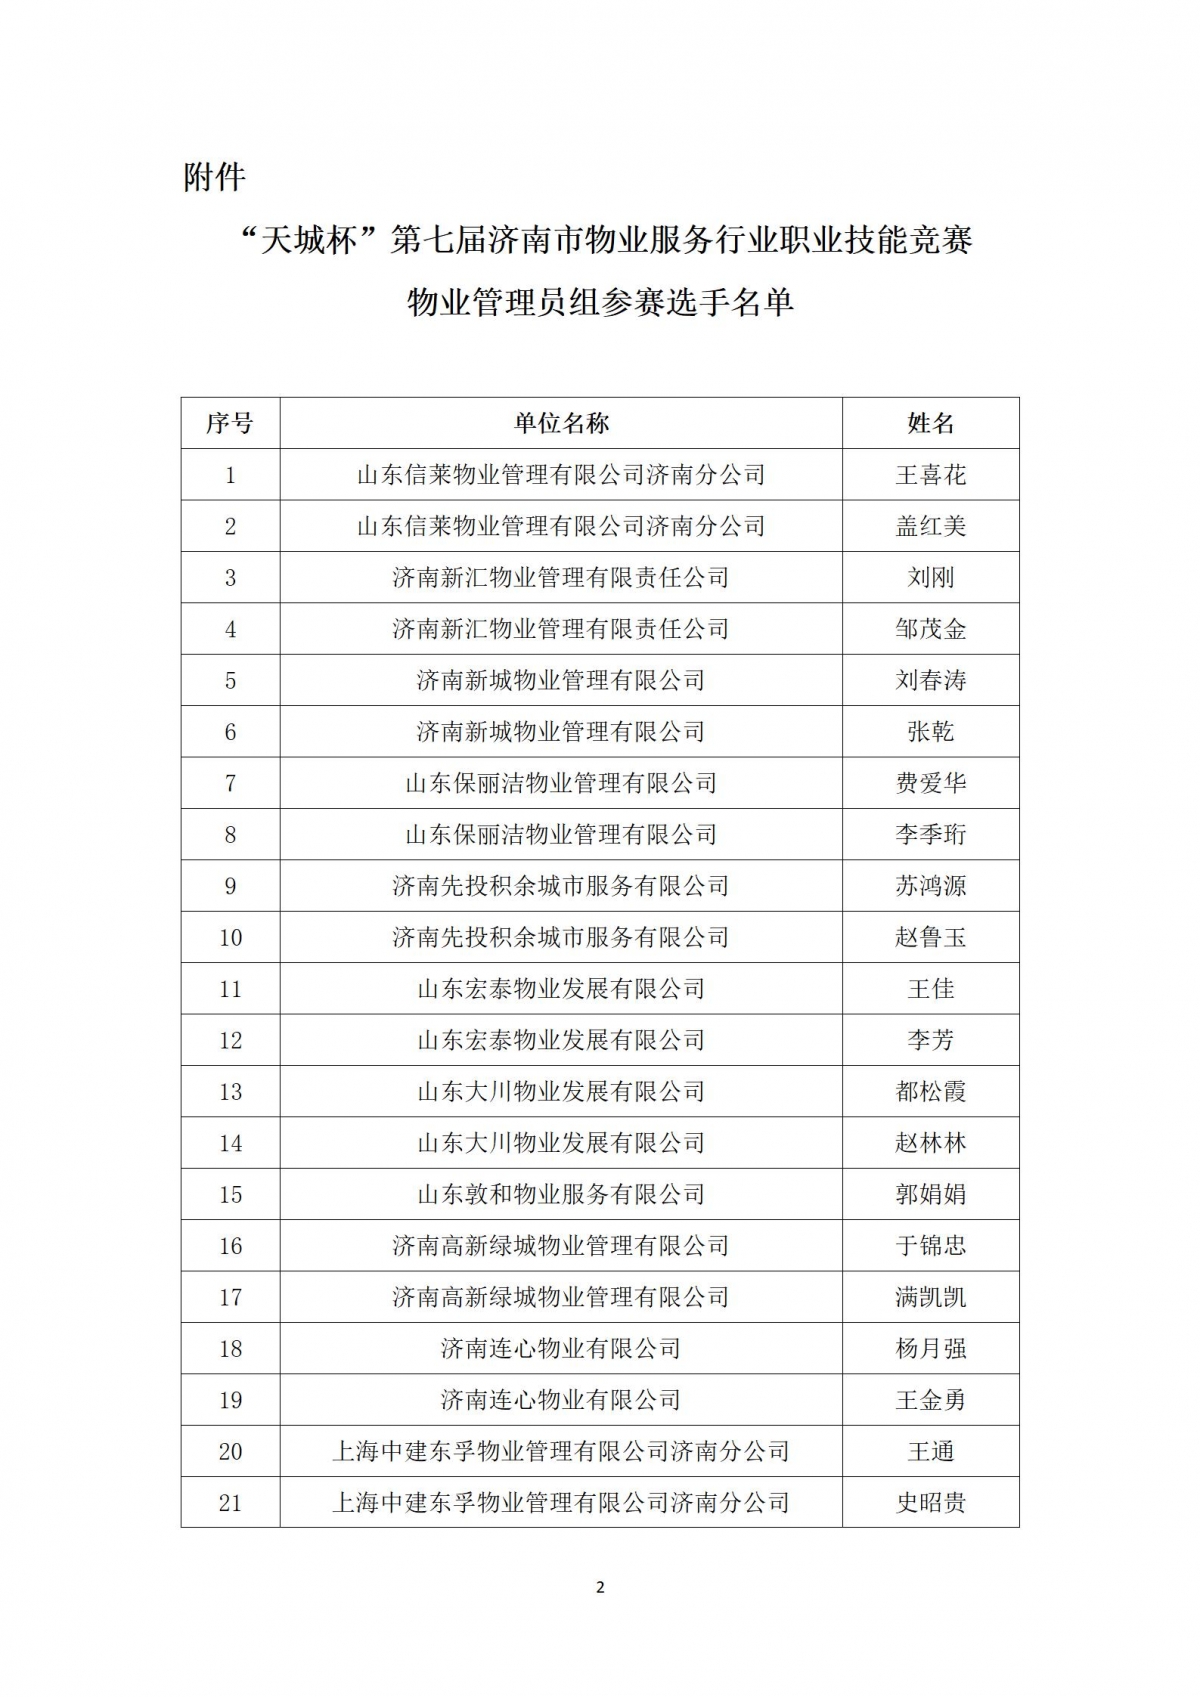 关于“天城杯”第七届济南市物业服务行业职业技能竞赛选手名单的公示_02